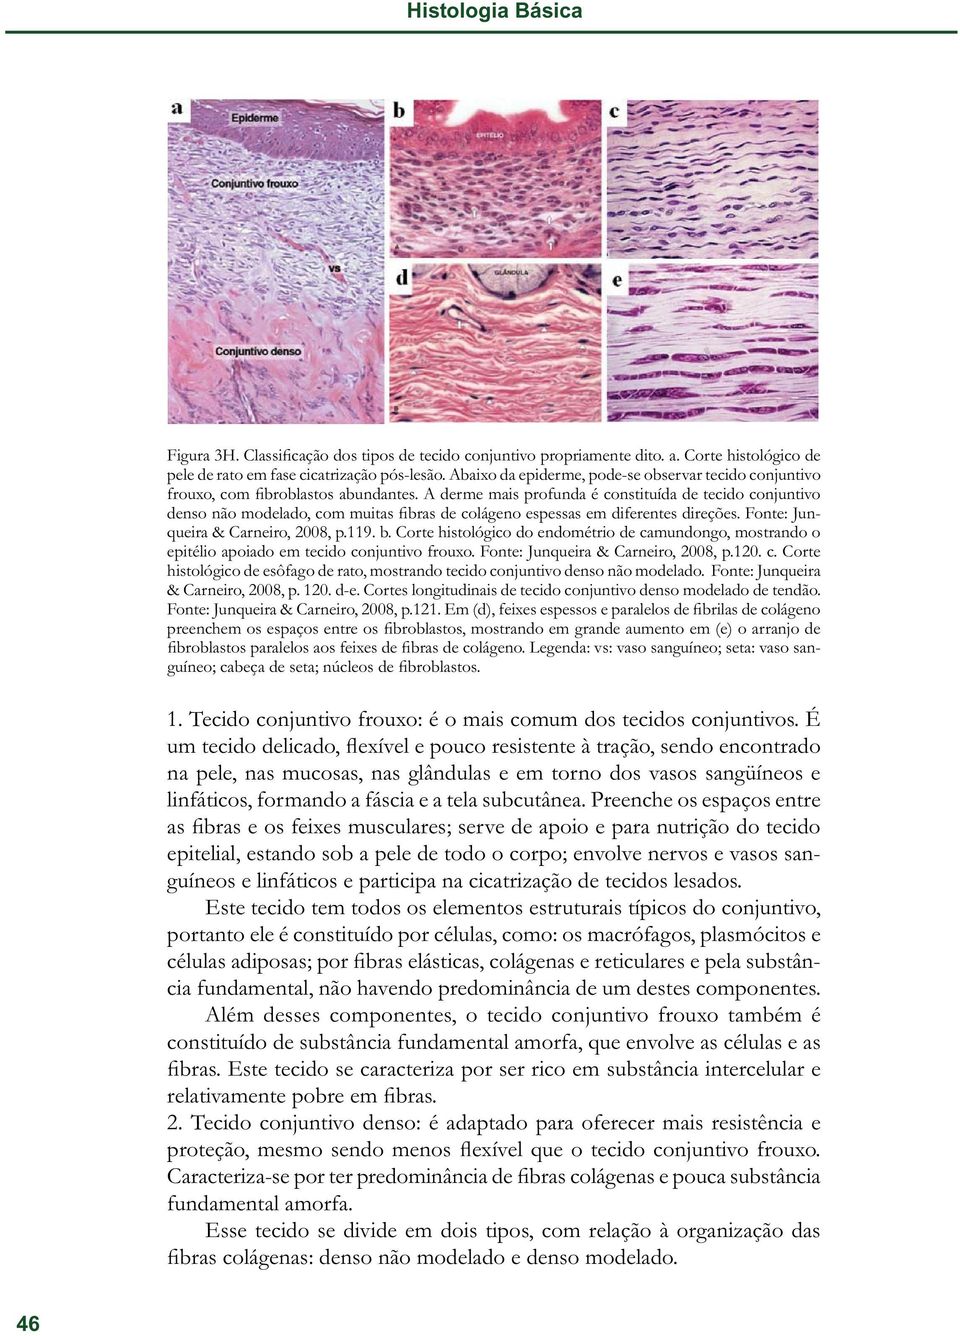 A derme mais profunda é constituída de tecido conjuntivo denso não modelado, com muitas fibras de colágeno espessas em diferentes direções. Fonte: Junqueira & Carneiro, 2008, p.119. b.